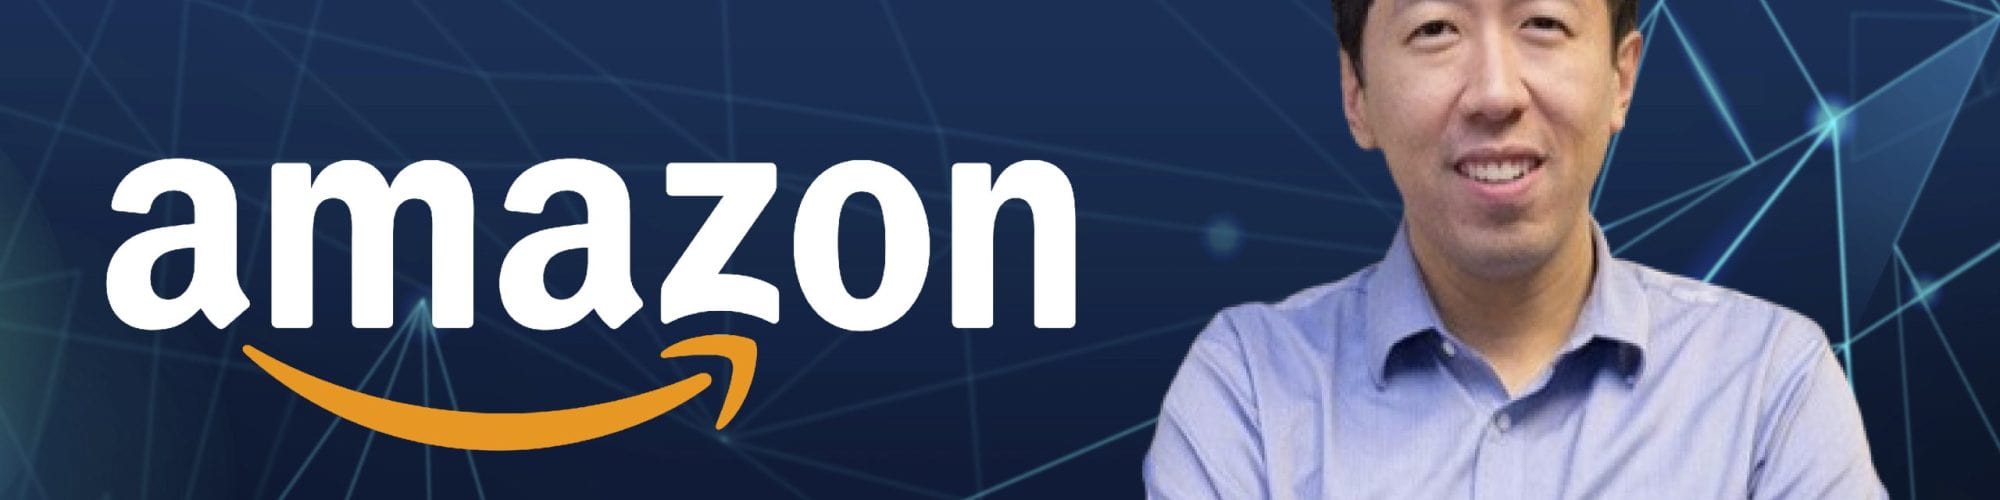 Amazon-adds-Andrew